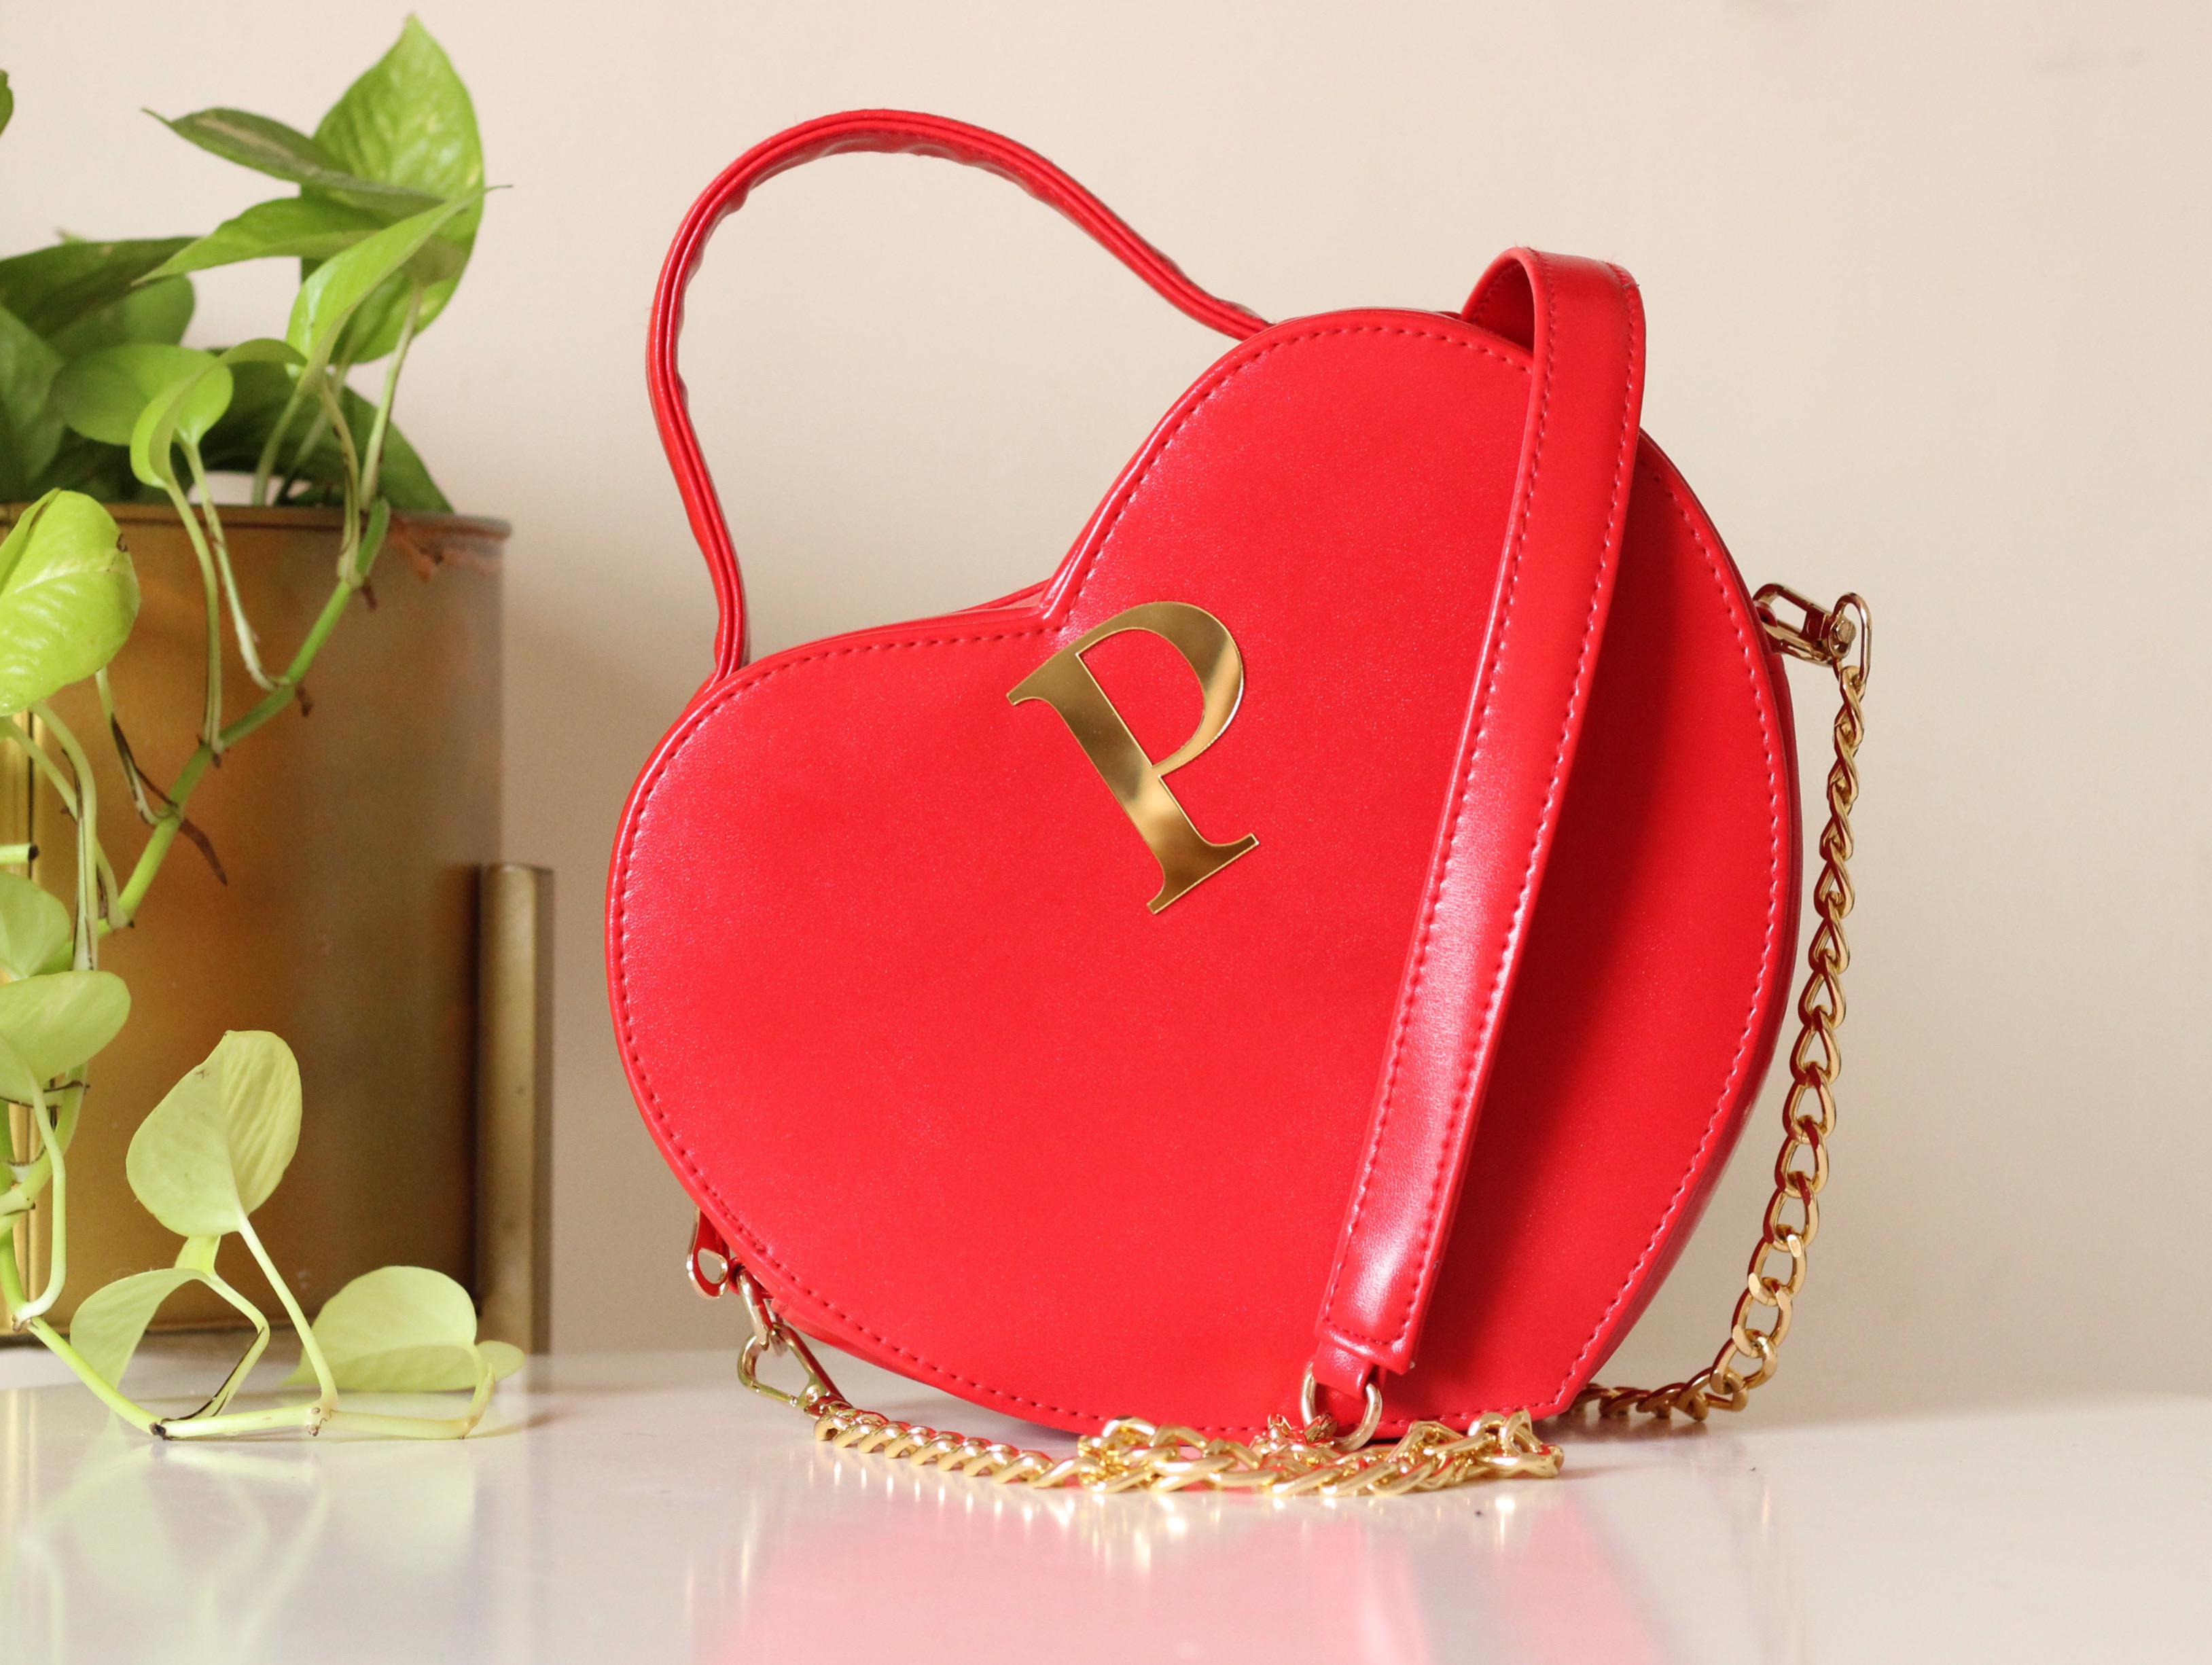 Retro Inspired Red Heart Shaped Bag — -RESTORED 2 B LOVED